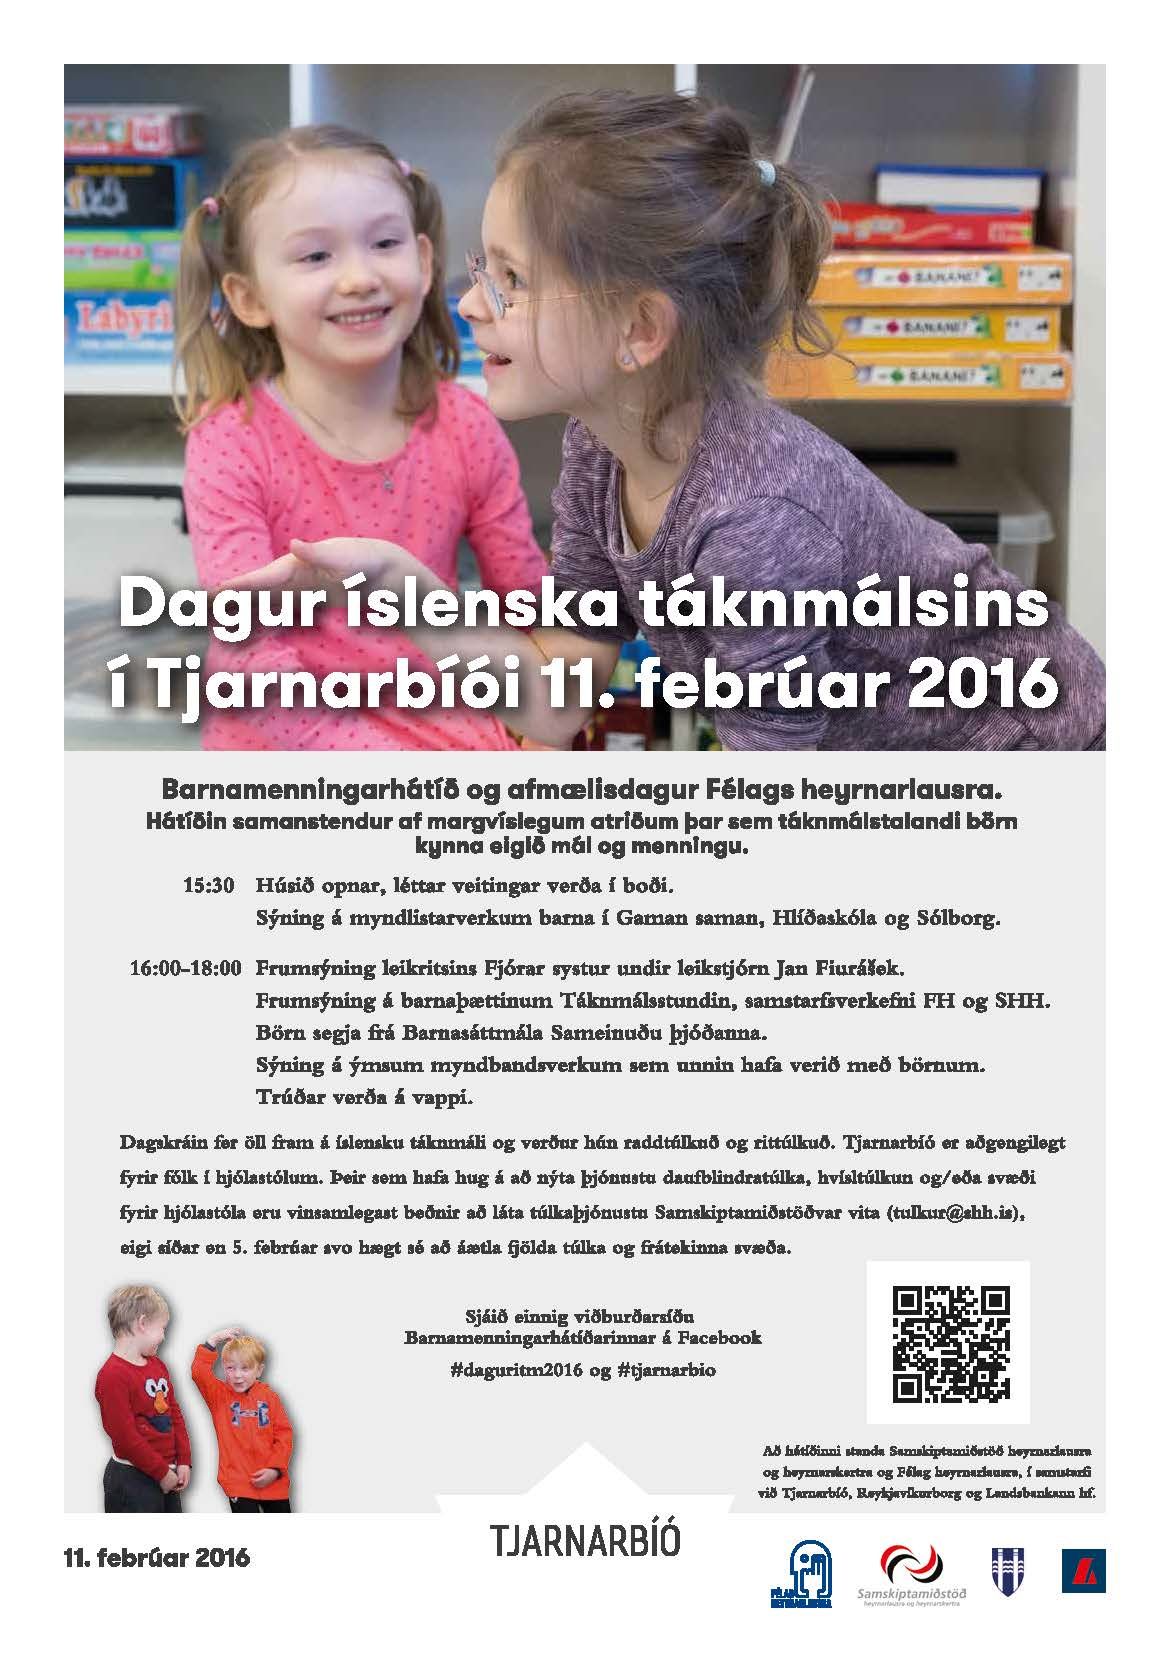 Dagur-islenska-taknmalsins-2016